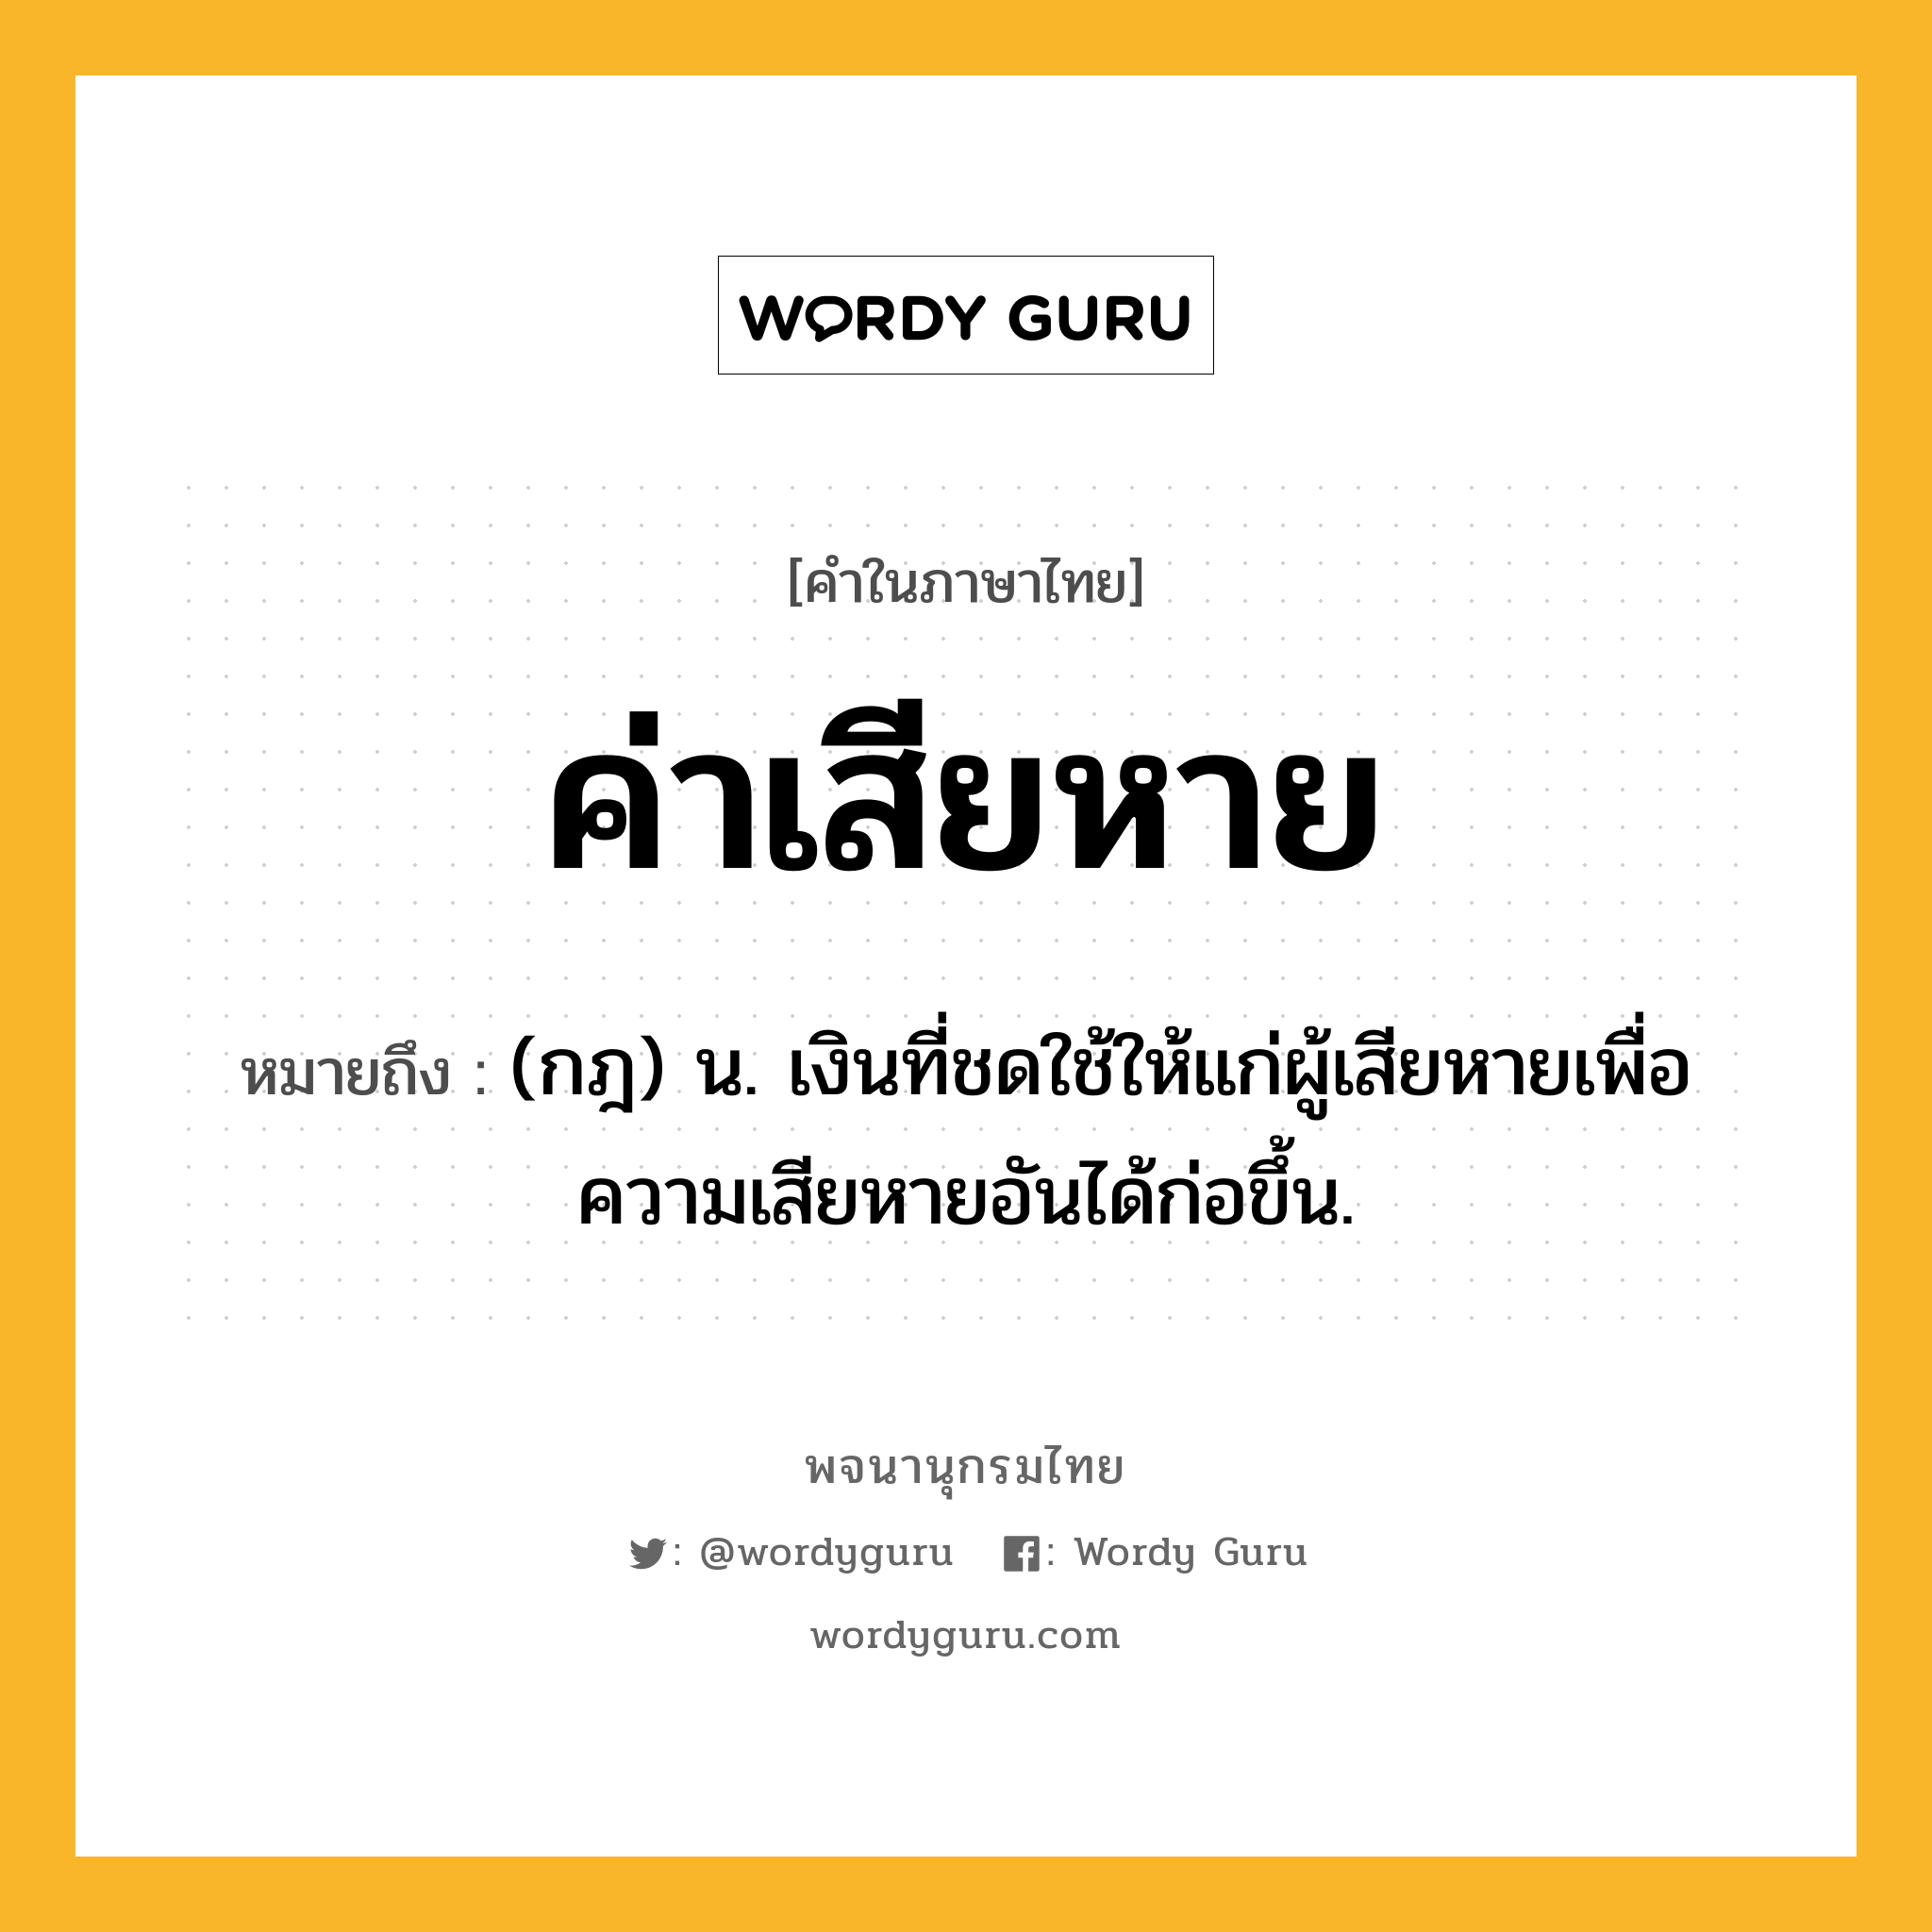 ค่าเสียหาย ความหมาย หมายถึงอะไร?, คำในภาษาไทย ค่าเสียหาย หมายถึง (กฎ) น. เงินที่ชดใช้ให้แก่ผู้เสียหายเพื่อความเสียหายอันได้ก่อขึ้น.